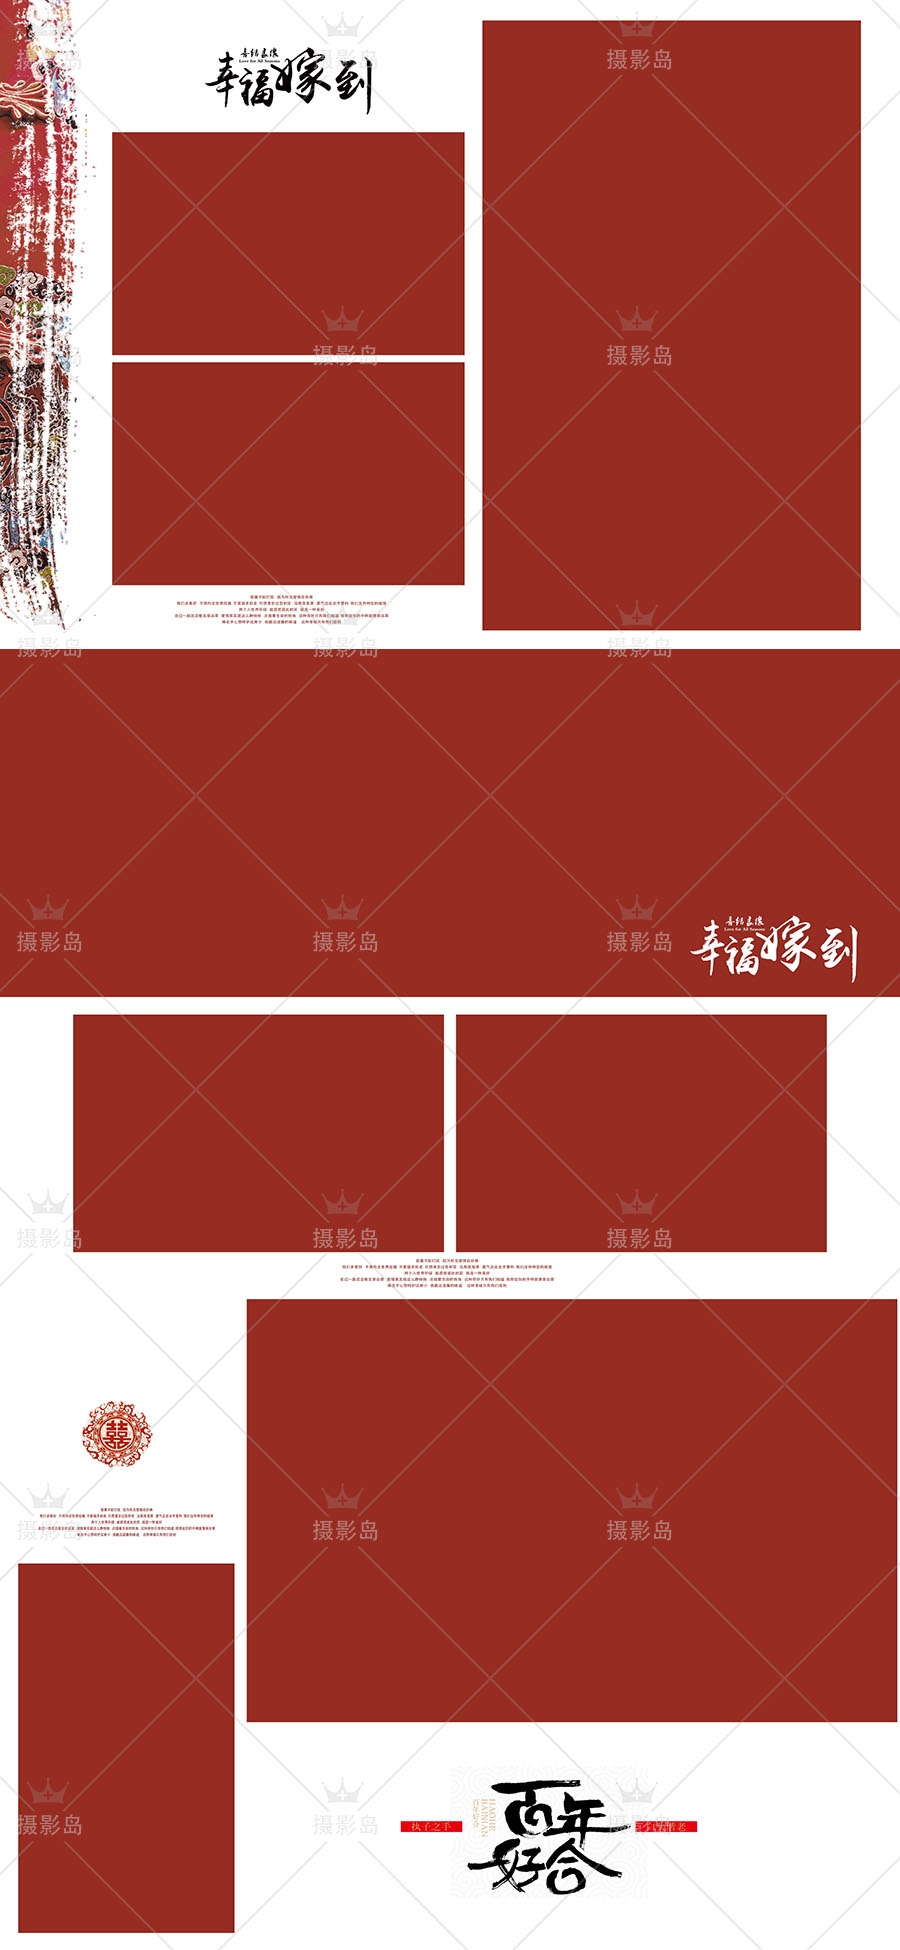 古装中国风主题婚纱摄影PSD相册模板， 影楼红色喜嫁相册竖板排版素材